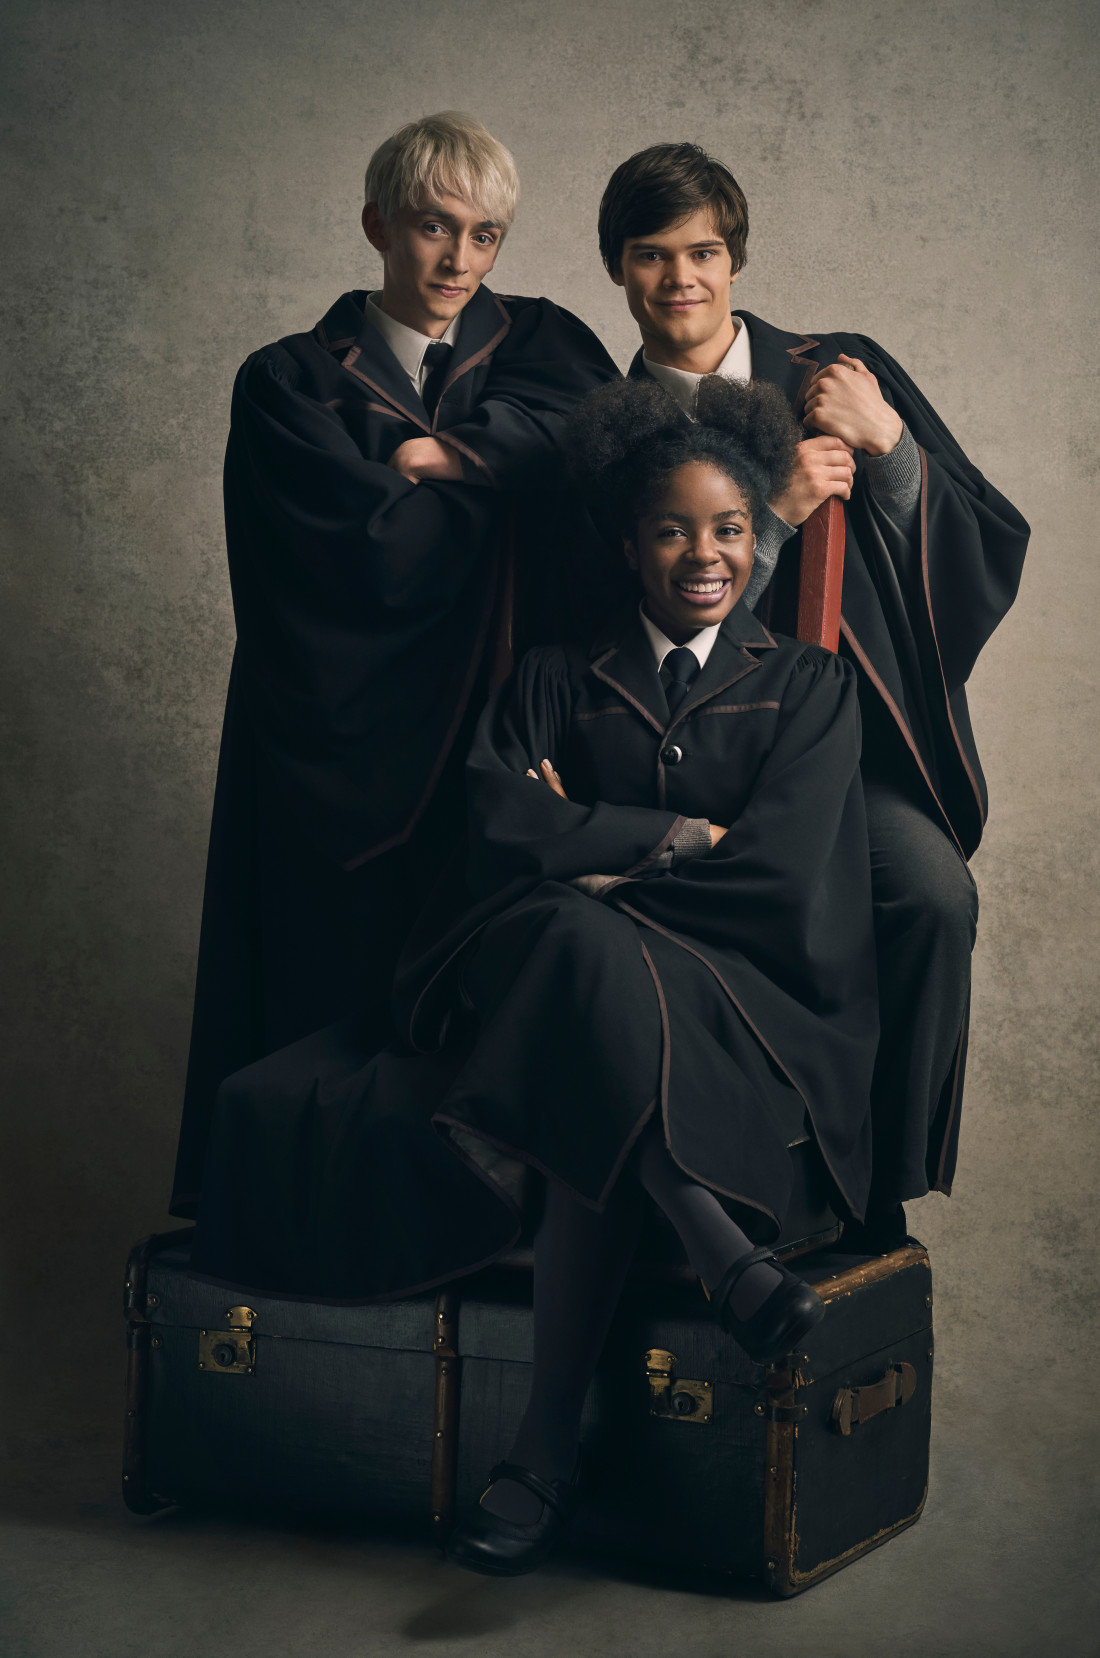 Revelan primeras fotos oficiales de nuevos actores de "Harry Potter y el legado maldito" | TV y ...